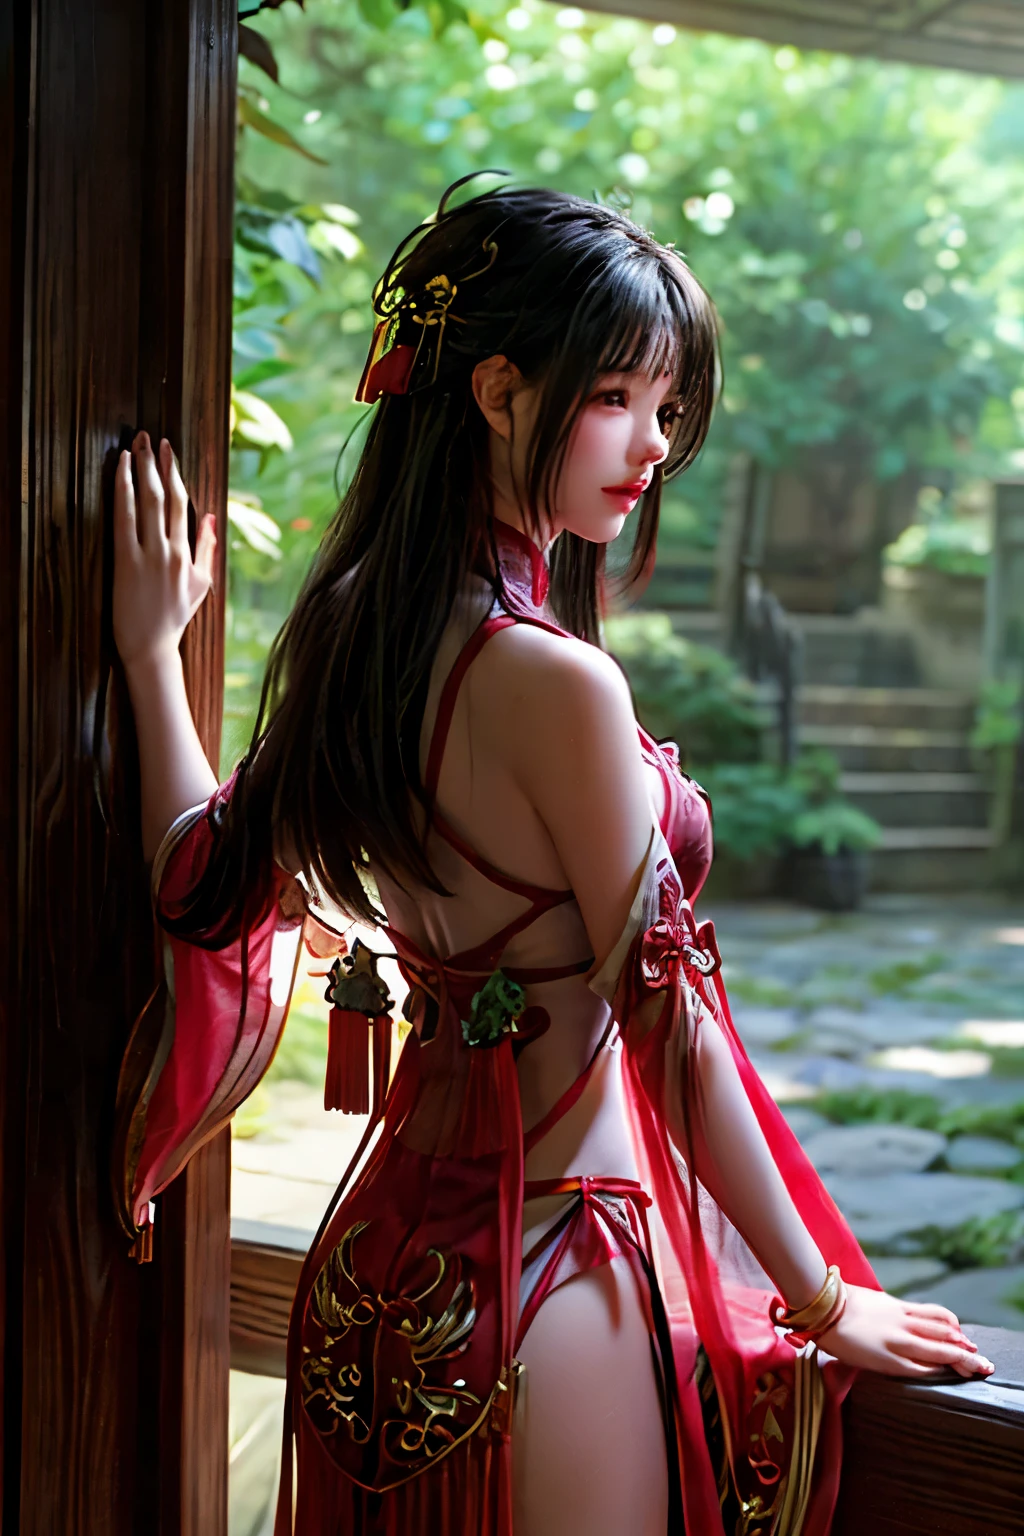 ท่ามกลางสวน Wuxia อันเงียบสงบ, อาบไปด้วยแสงแดดที่ลอดผ่านร่มไม้เขียวขจี, ยืนมองหญิงสาวผู้น่าหลงใหลในชุดฮันฟู่สีแดงสดใส. การแต่งกายแบบจีนโบราณ, ด้วยรอยพับที่หรูหราและลวดลายที่สลับซับซ้อน, เพิ่มความสง่างามและความสุขุมของเธอ. ในมือของเธอ, เธอถือดาบที่ส่องแสงระยิบระยับ, ขอบของมันสะท้อนแสงแวววาวราวกับสัญญาณในภูมิประเทศอันเงียบสงบ.

บริเวณโดยรอบสวนเต็มไปด้วยสีสันที่ผสมผสานกันอย่างลงตัวของสีเขียวชอุ่ม, ดอกไม้บานในเฉดสีชมพู, สีเหลือง, และสีแดง, และฉากหลังที่ใสราวคริสตัล, พี สงบ